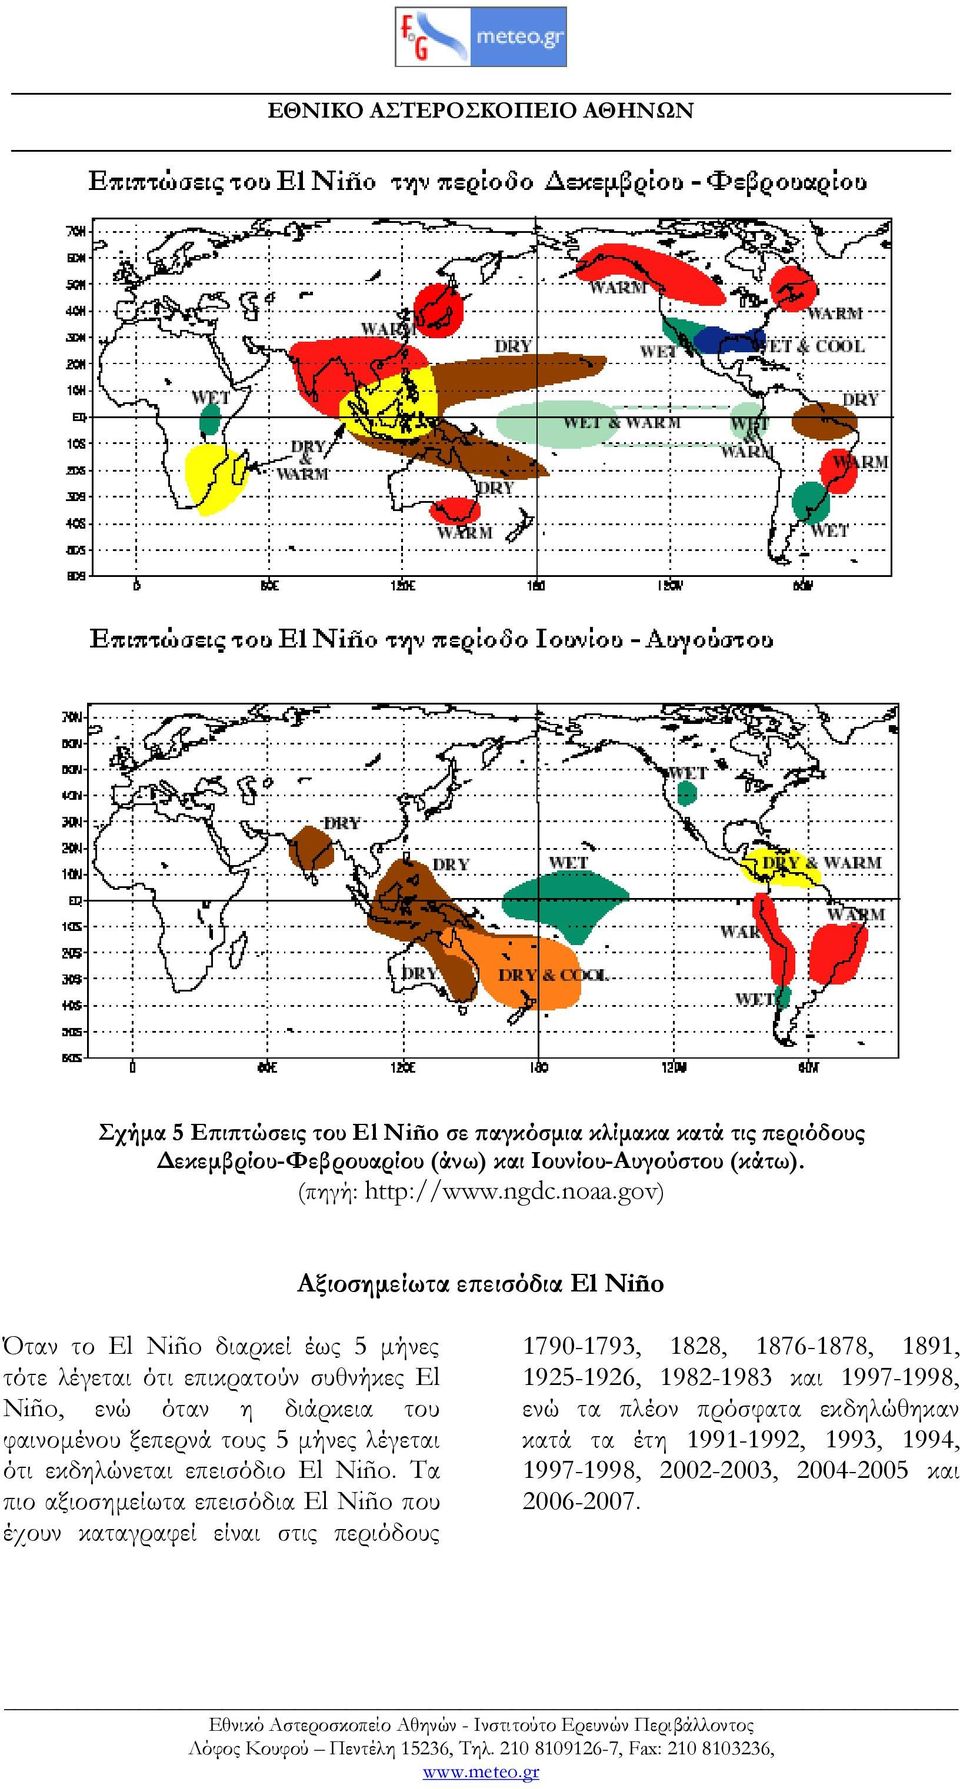 ξεπερνά τους 5 µήνες λέγεται ότι εκδηλώνεται επεισόδιο El Niño.